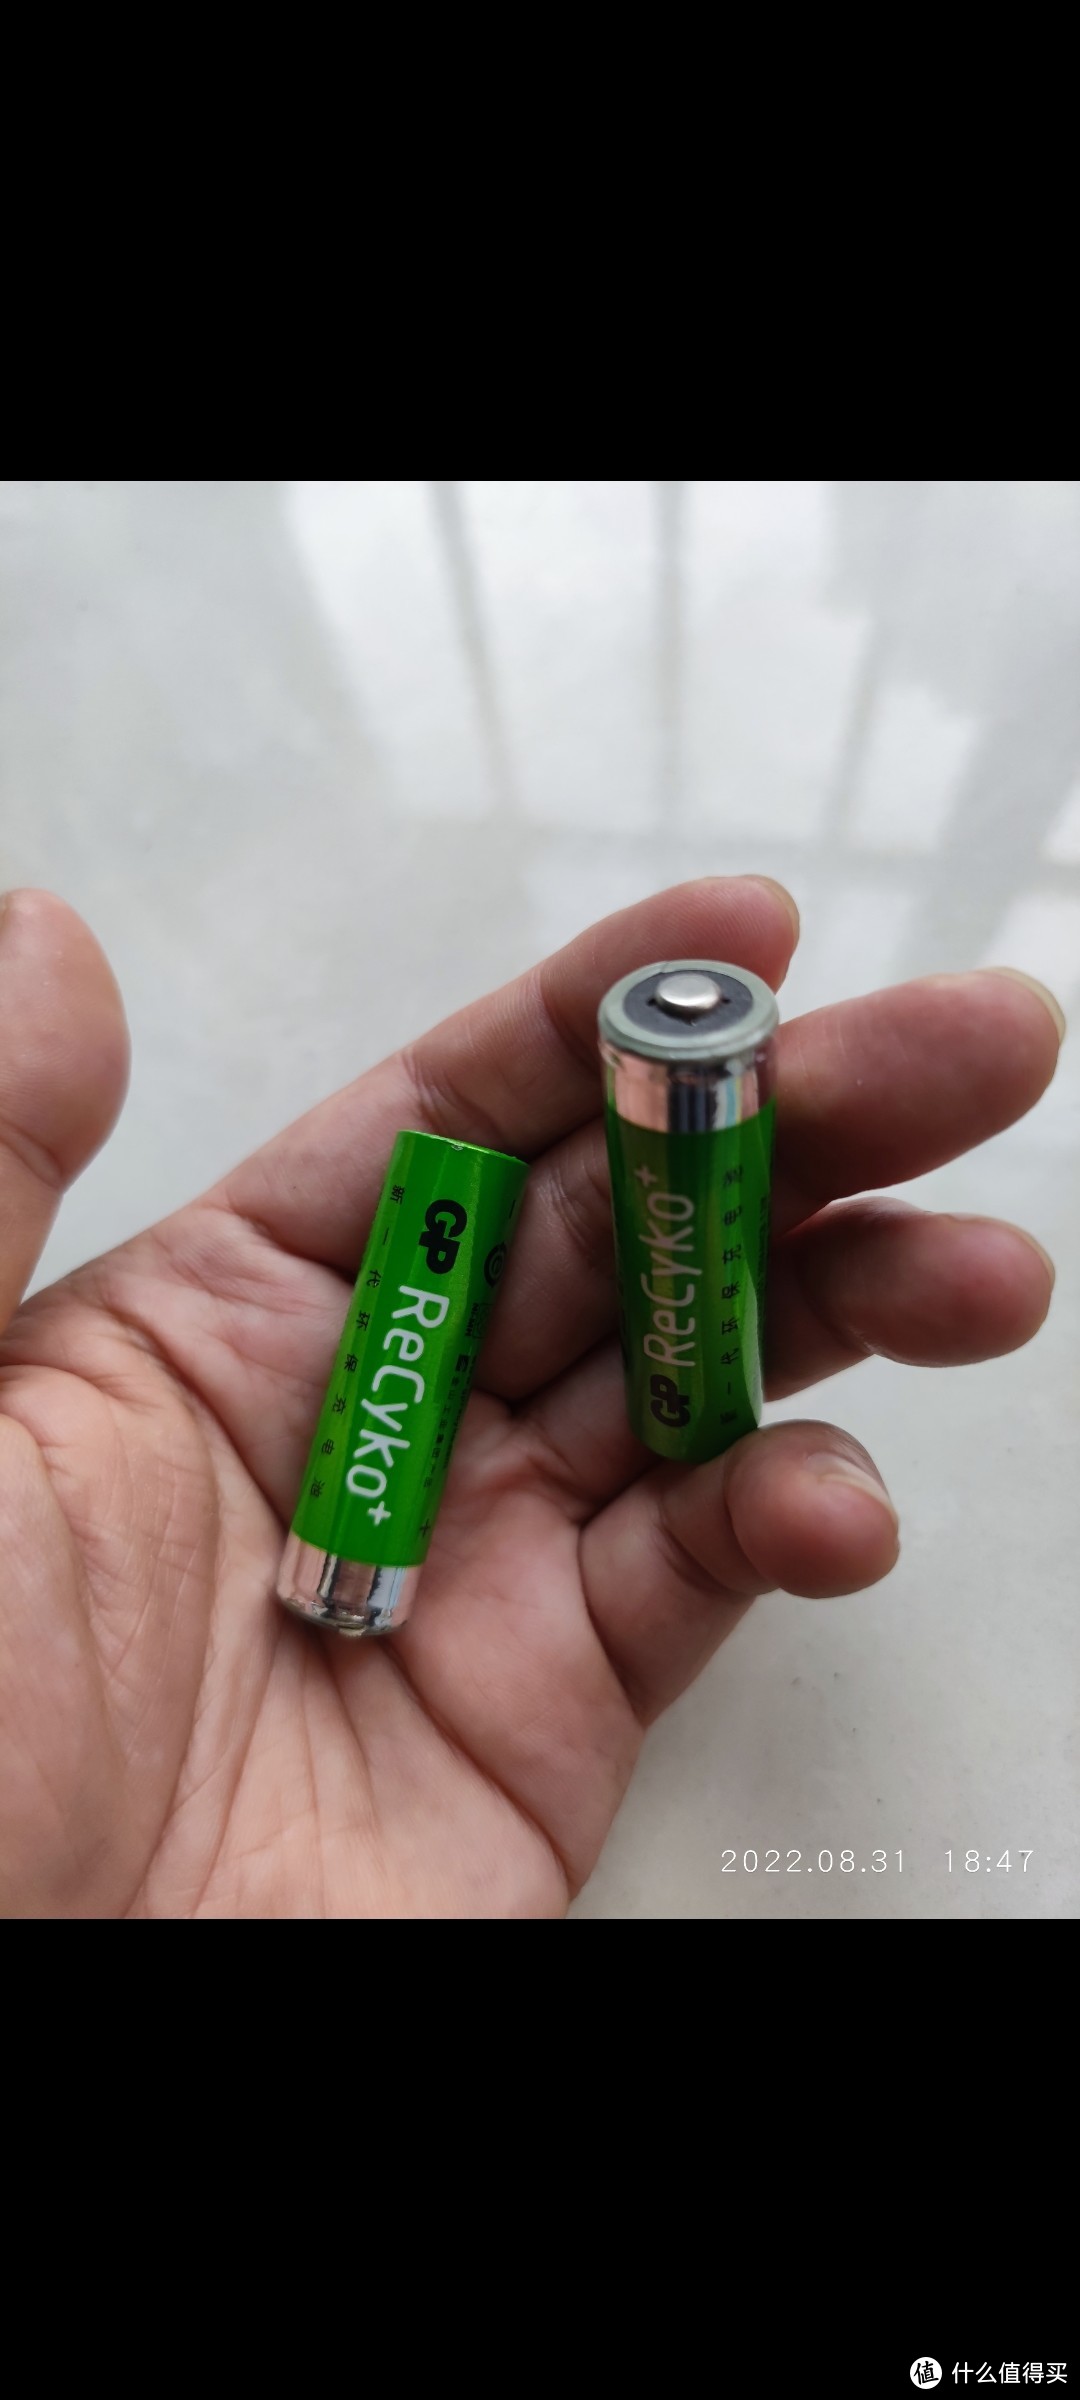 这个充电电池是12年4月在深圳商场买的，100元4节，头头都变颜色了，装上xss手柄还可以用很长时间，而中间用过一段时间爱老婆电池，已经不行了